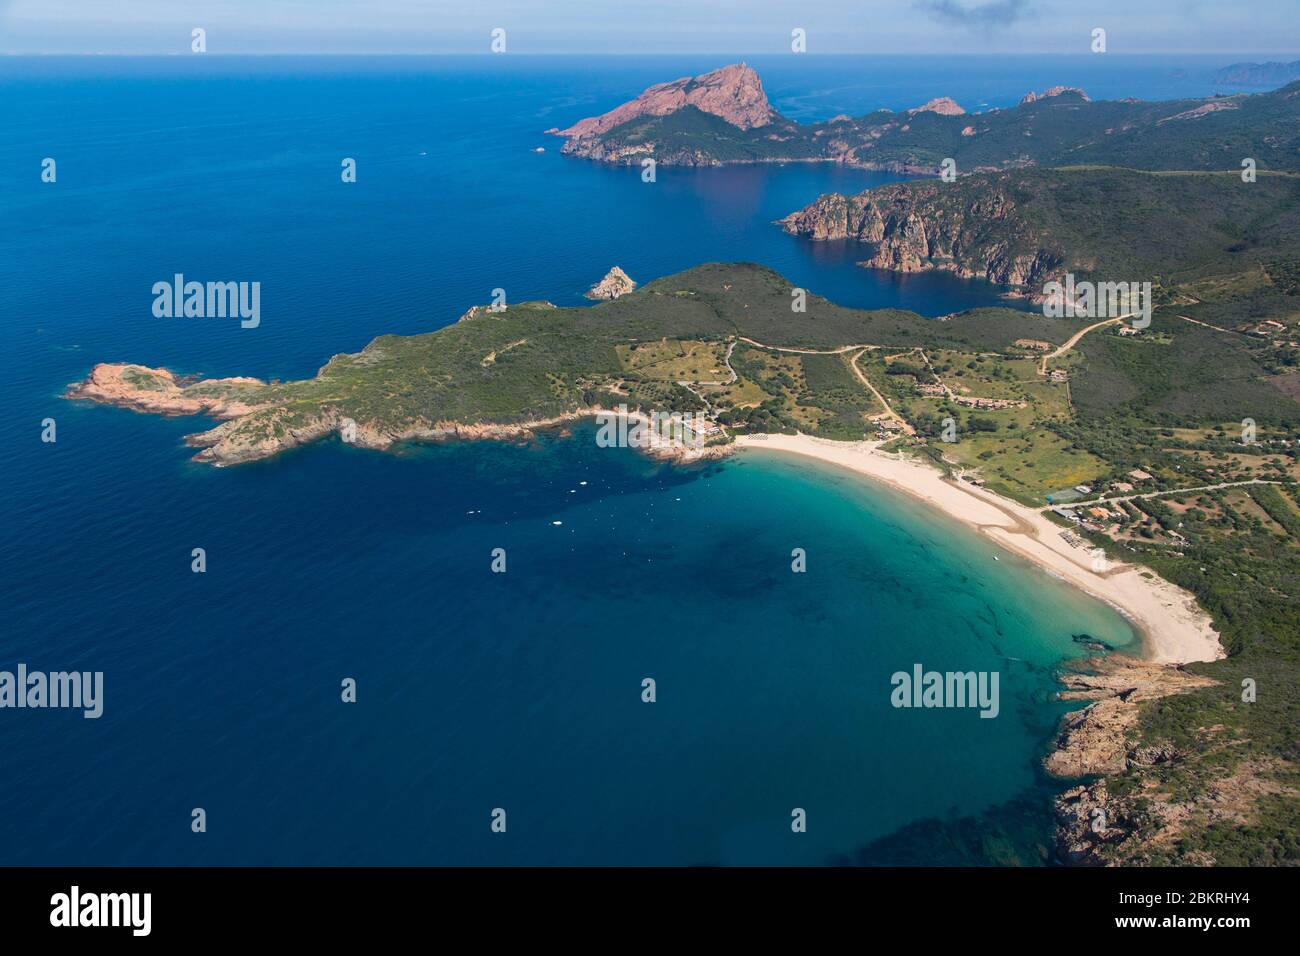 Francia. Corse du Sud, comune di piana, spiaggia di Arone, Capo Rosso o Capu Rossu, sito naturale classificato come Patrimonio dell'Umanità dall'UNESCO (vista aerea) Foto Stock